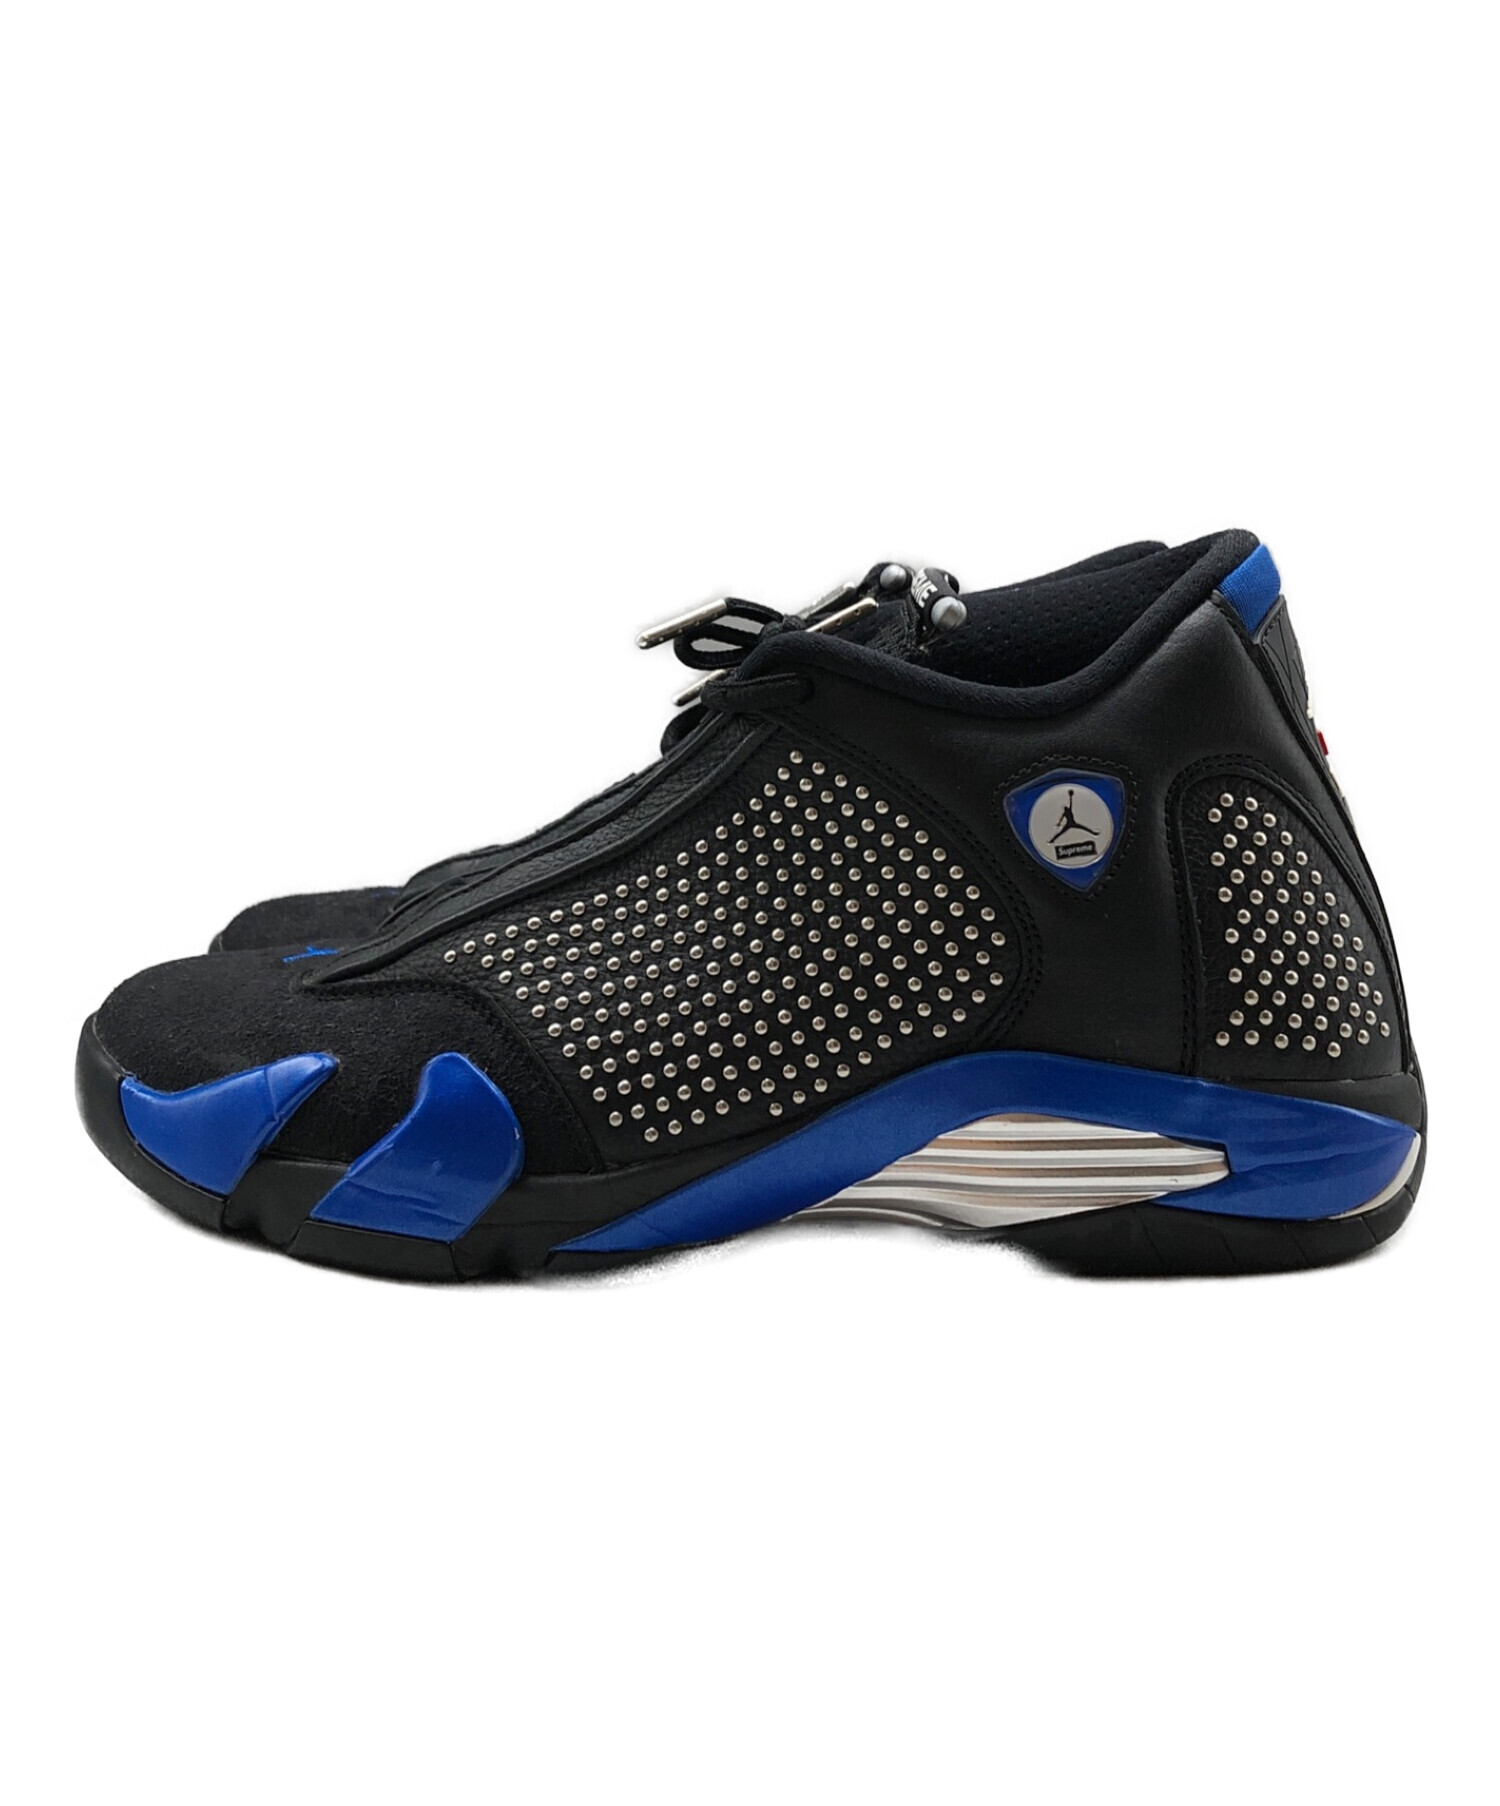 Supreme®/Nike® Air Jordan 14 BLACK  27.0